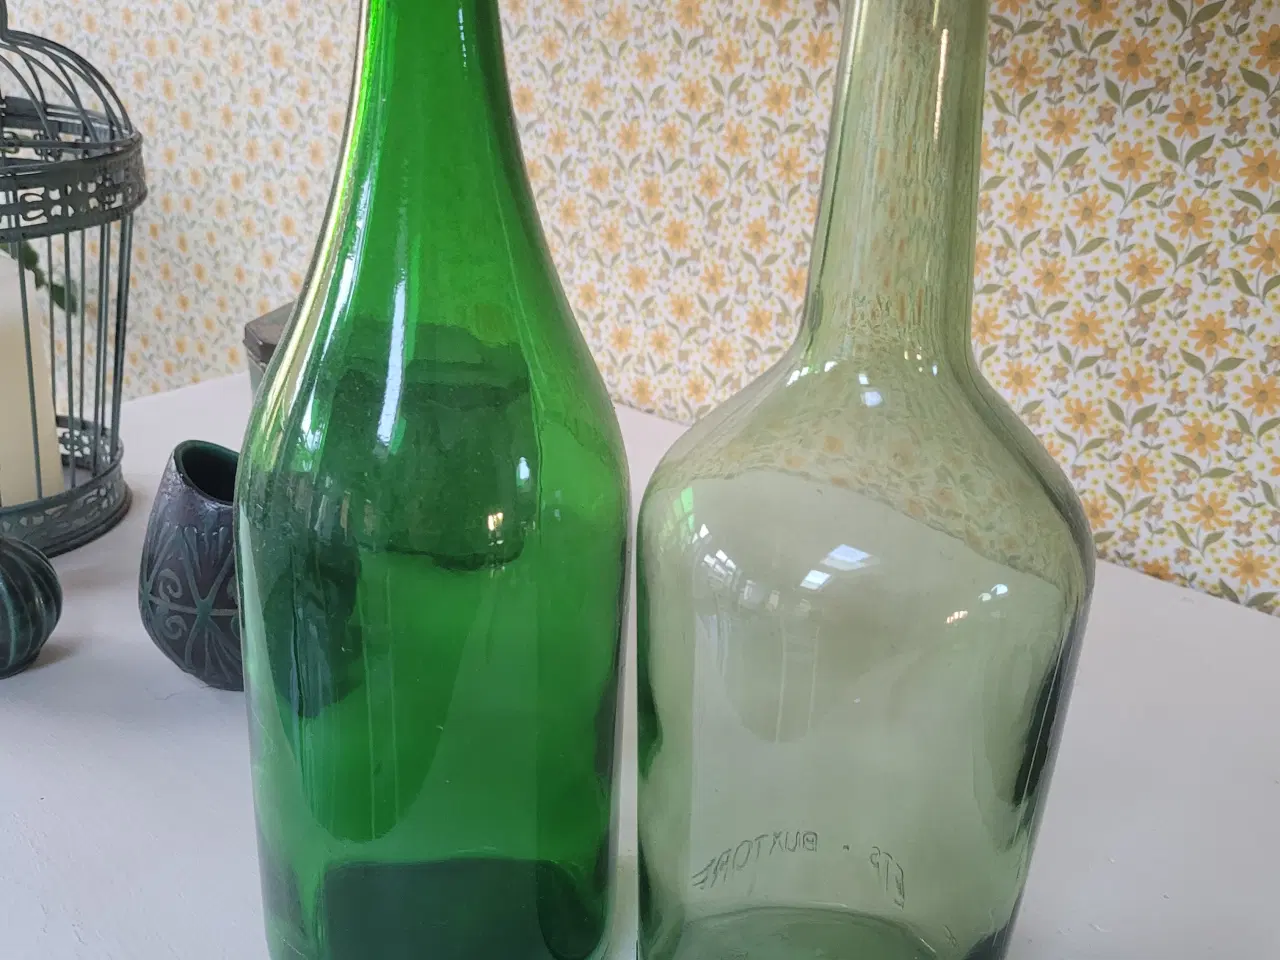 Billede 1 - 2 gamle flasker